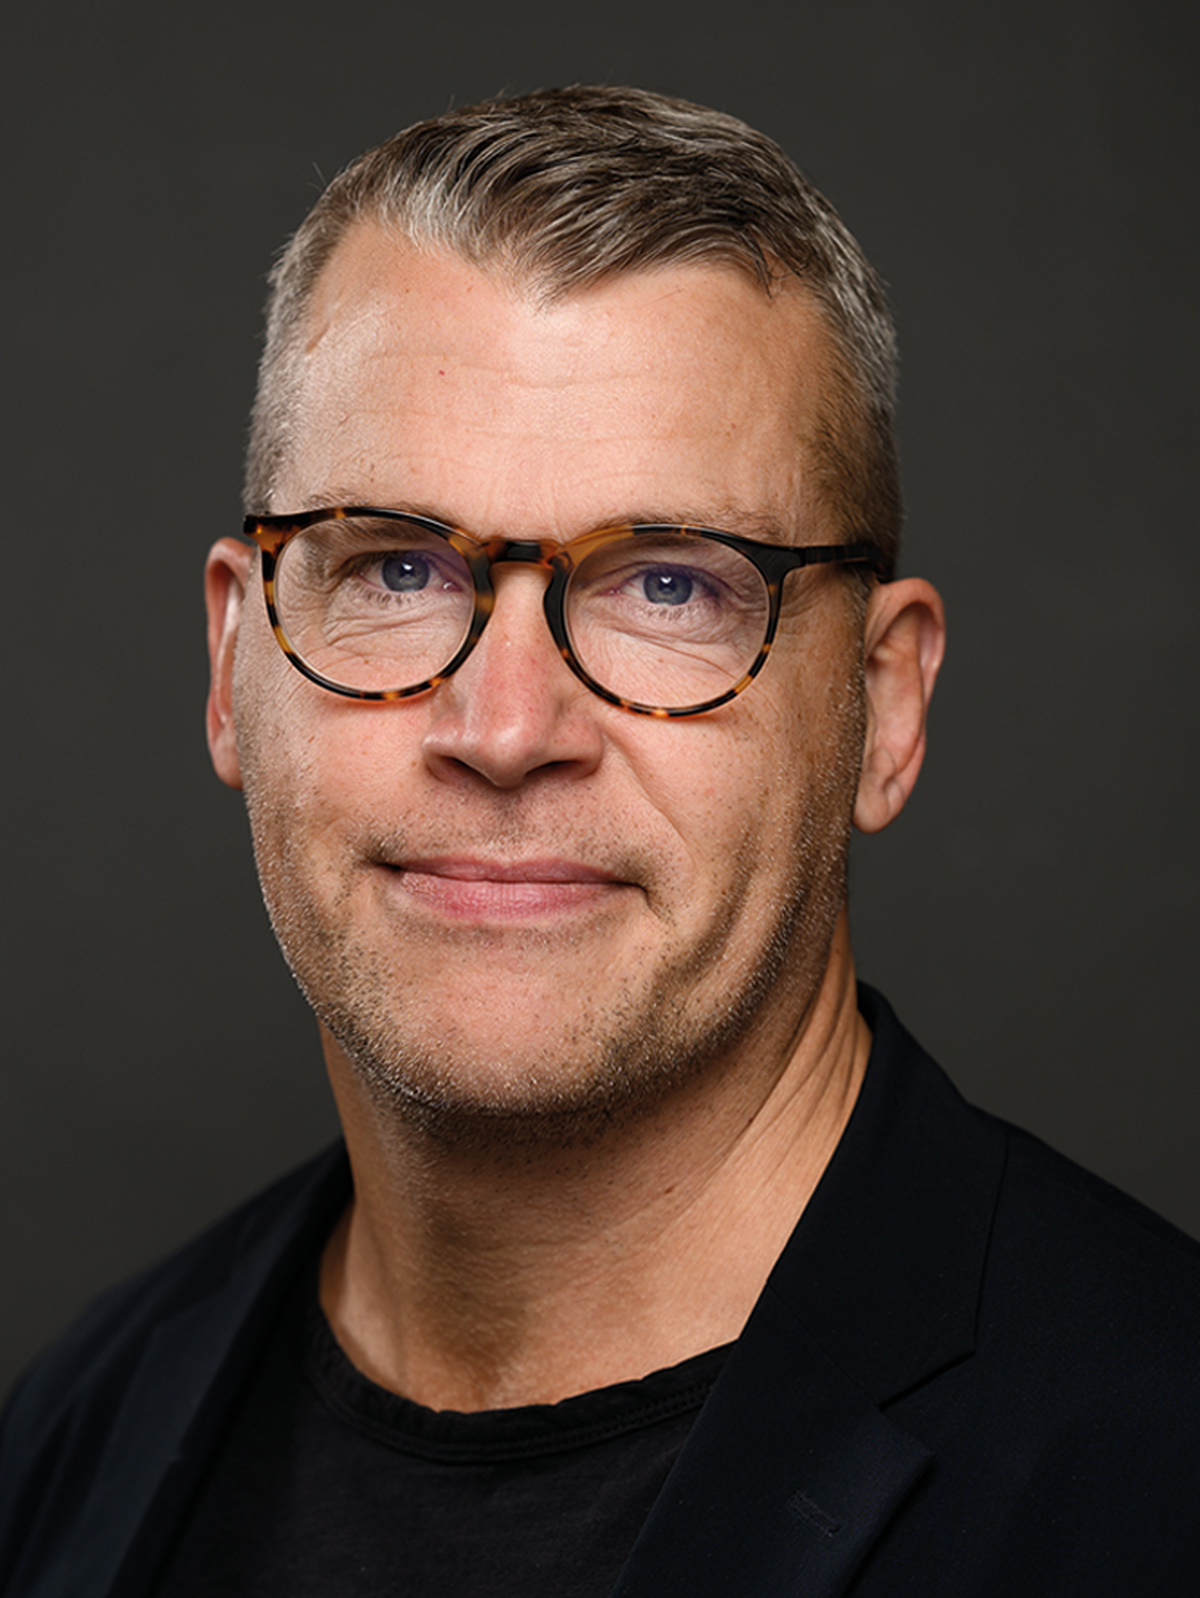 Niklas Junhager, Senior Advisor at Kobler